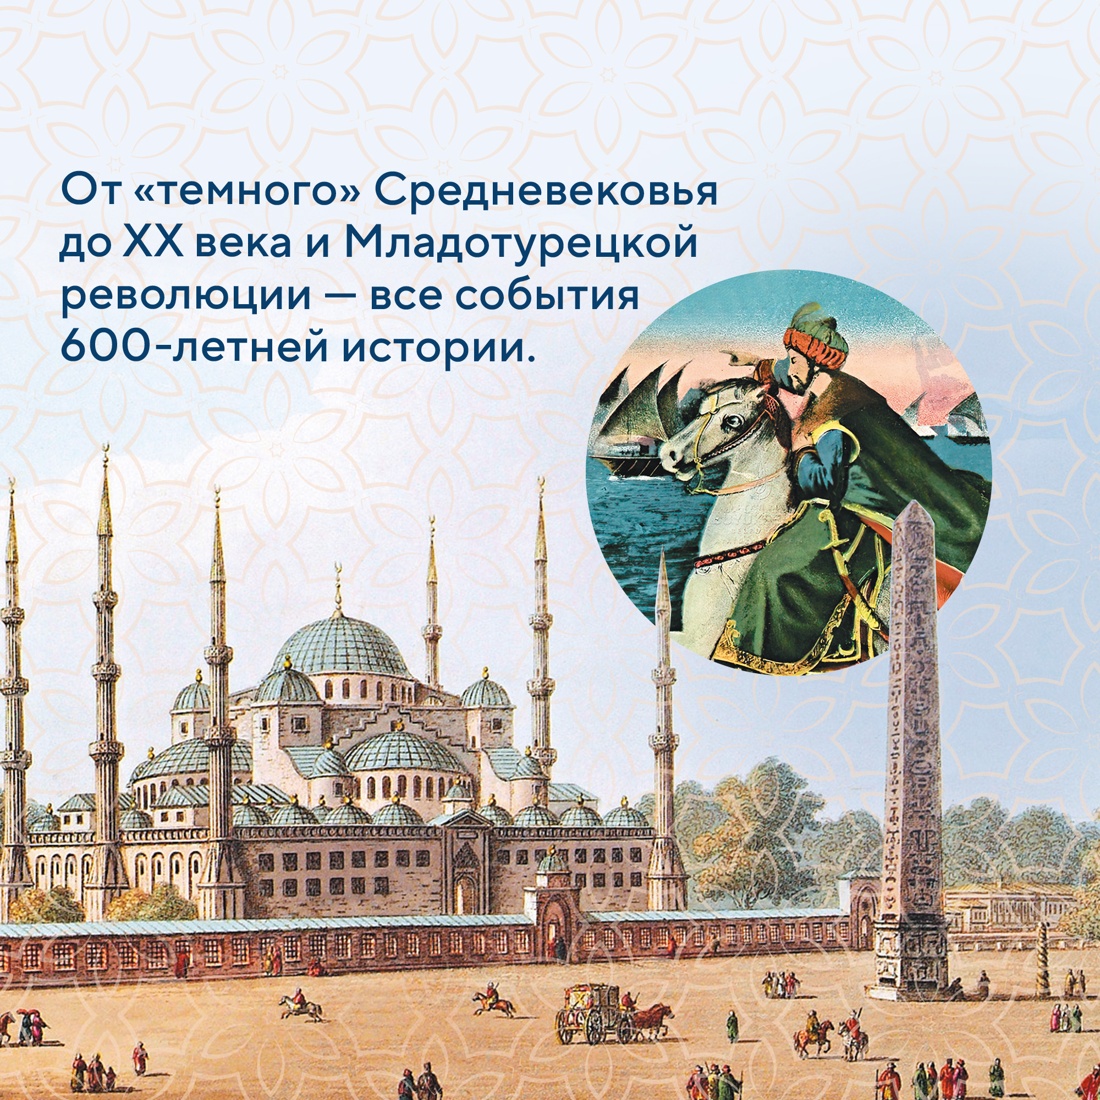 Промо материал к книге "Османская империя. Шесть веков истории" №4